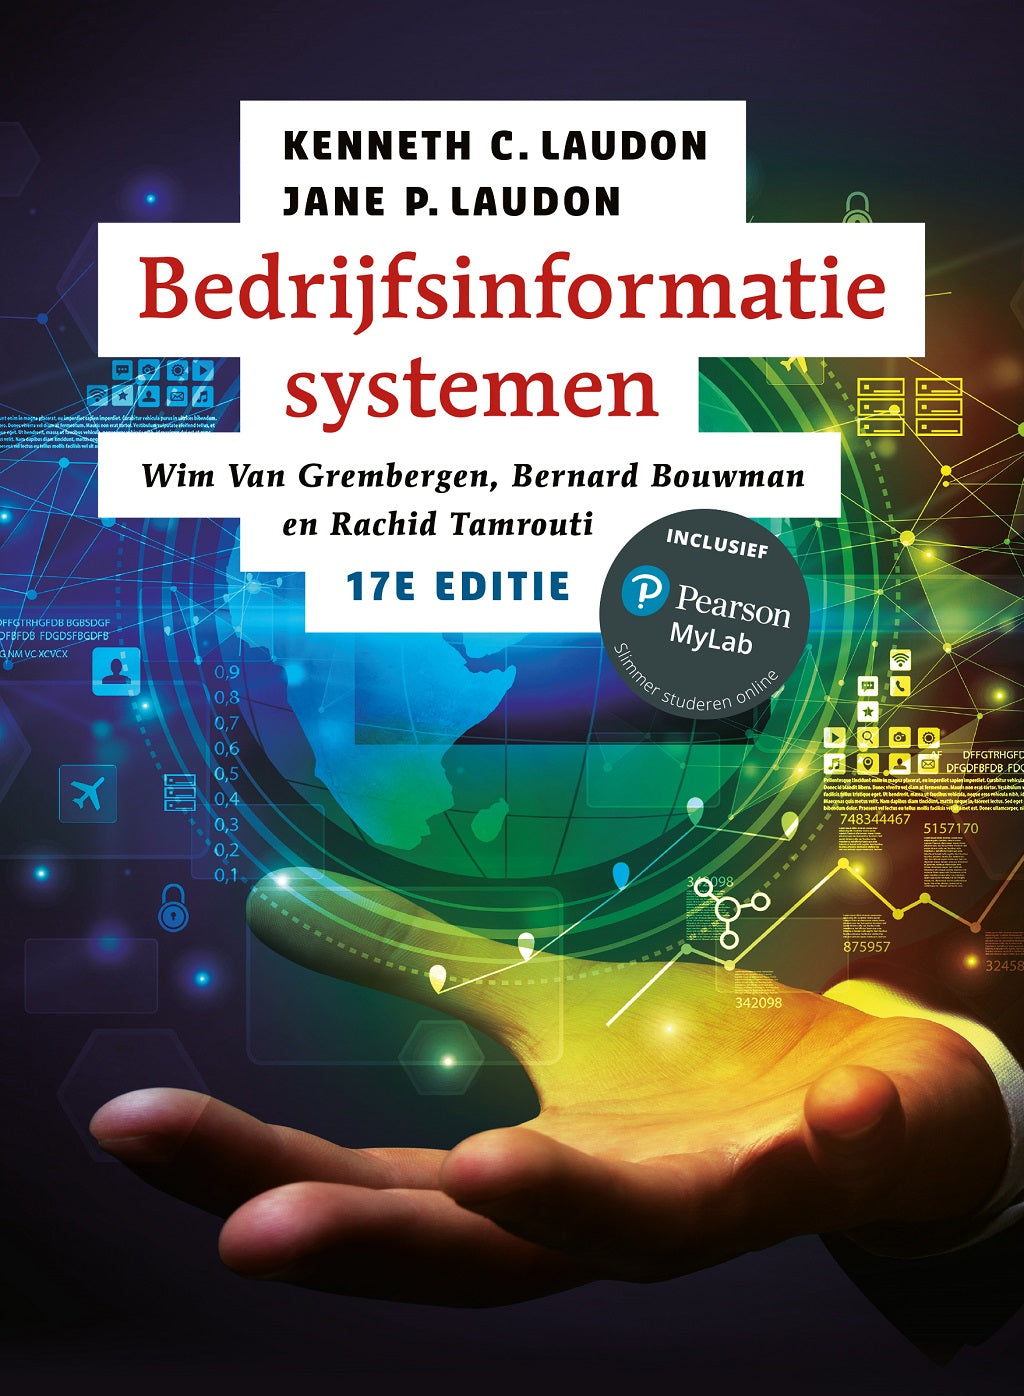 Bedrijfsinformatiesystemen, 17e editie (Print boek + MyLab toegangscode)